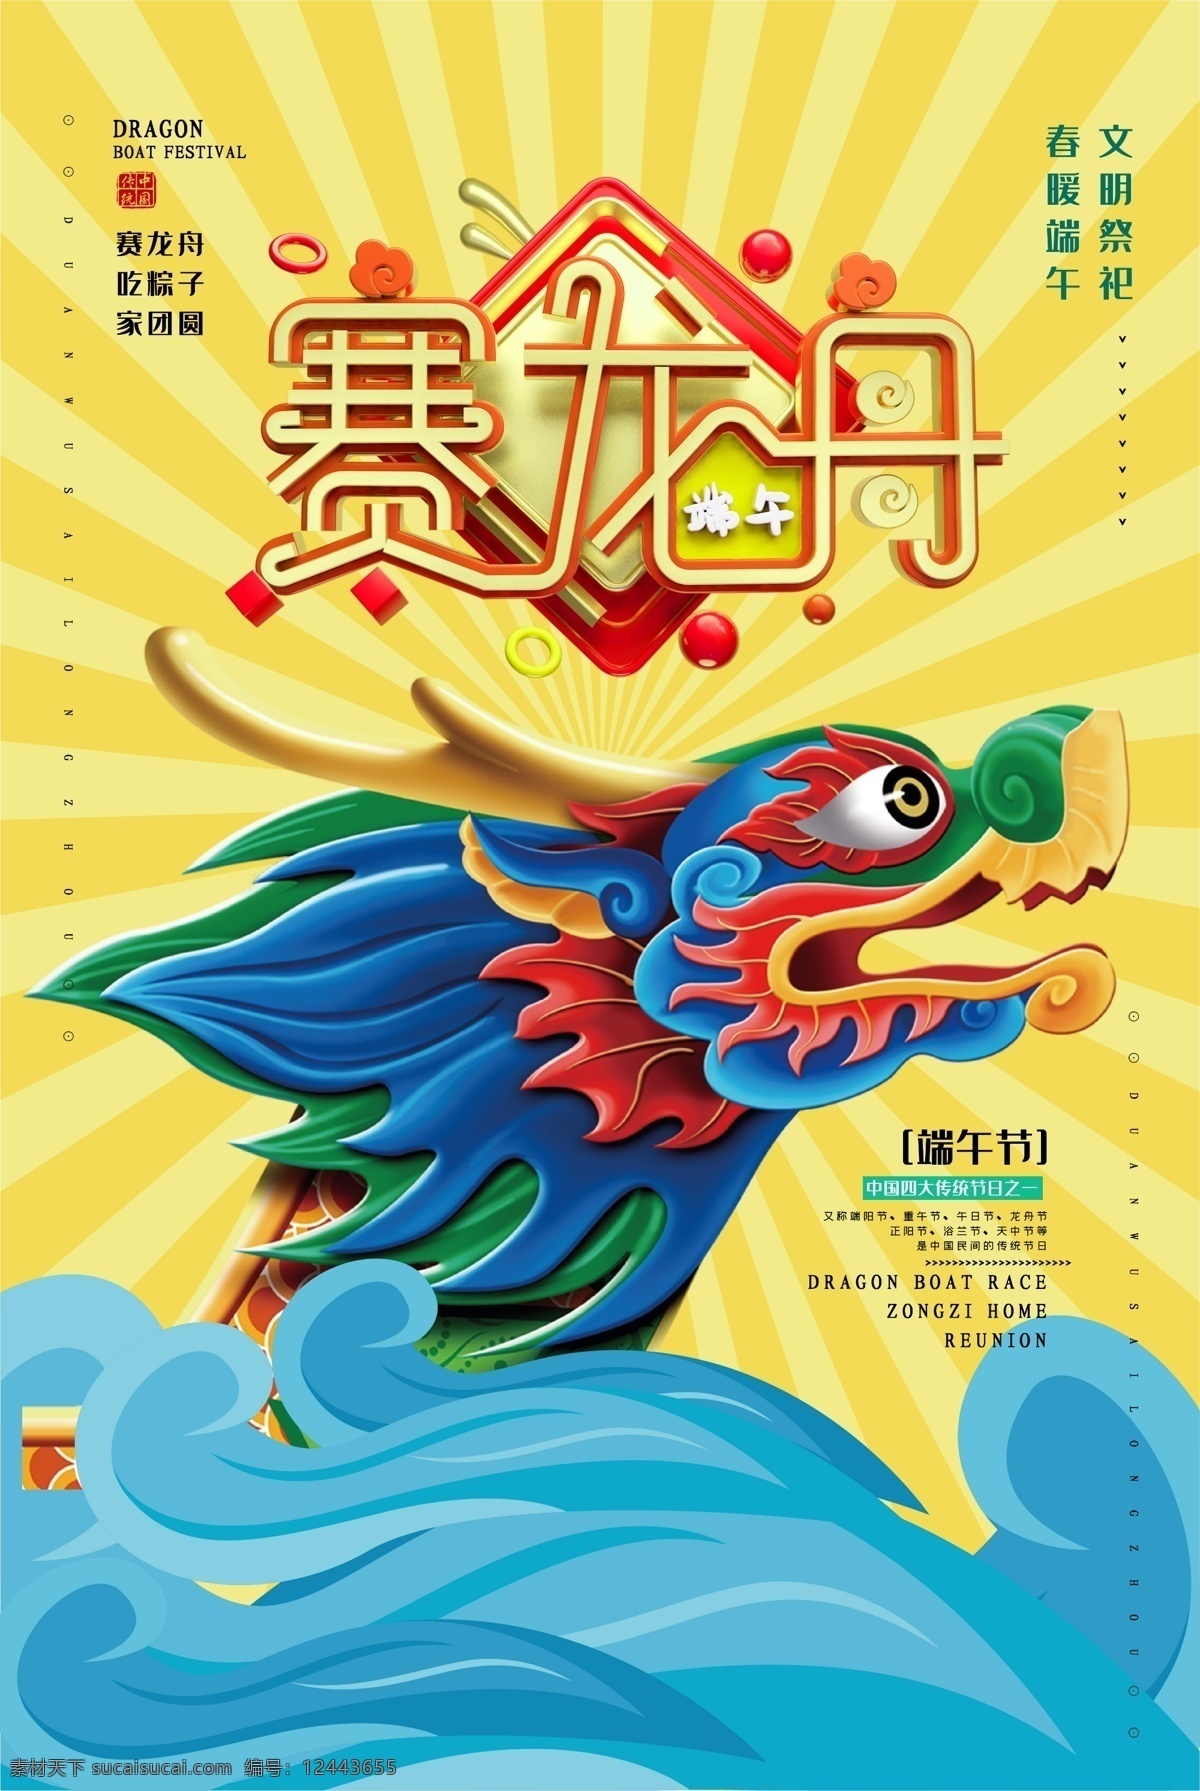 端午 节赛 龙舟 传统节日 创意 海报 端午海报 主图 主画面